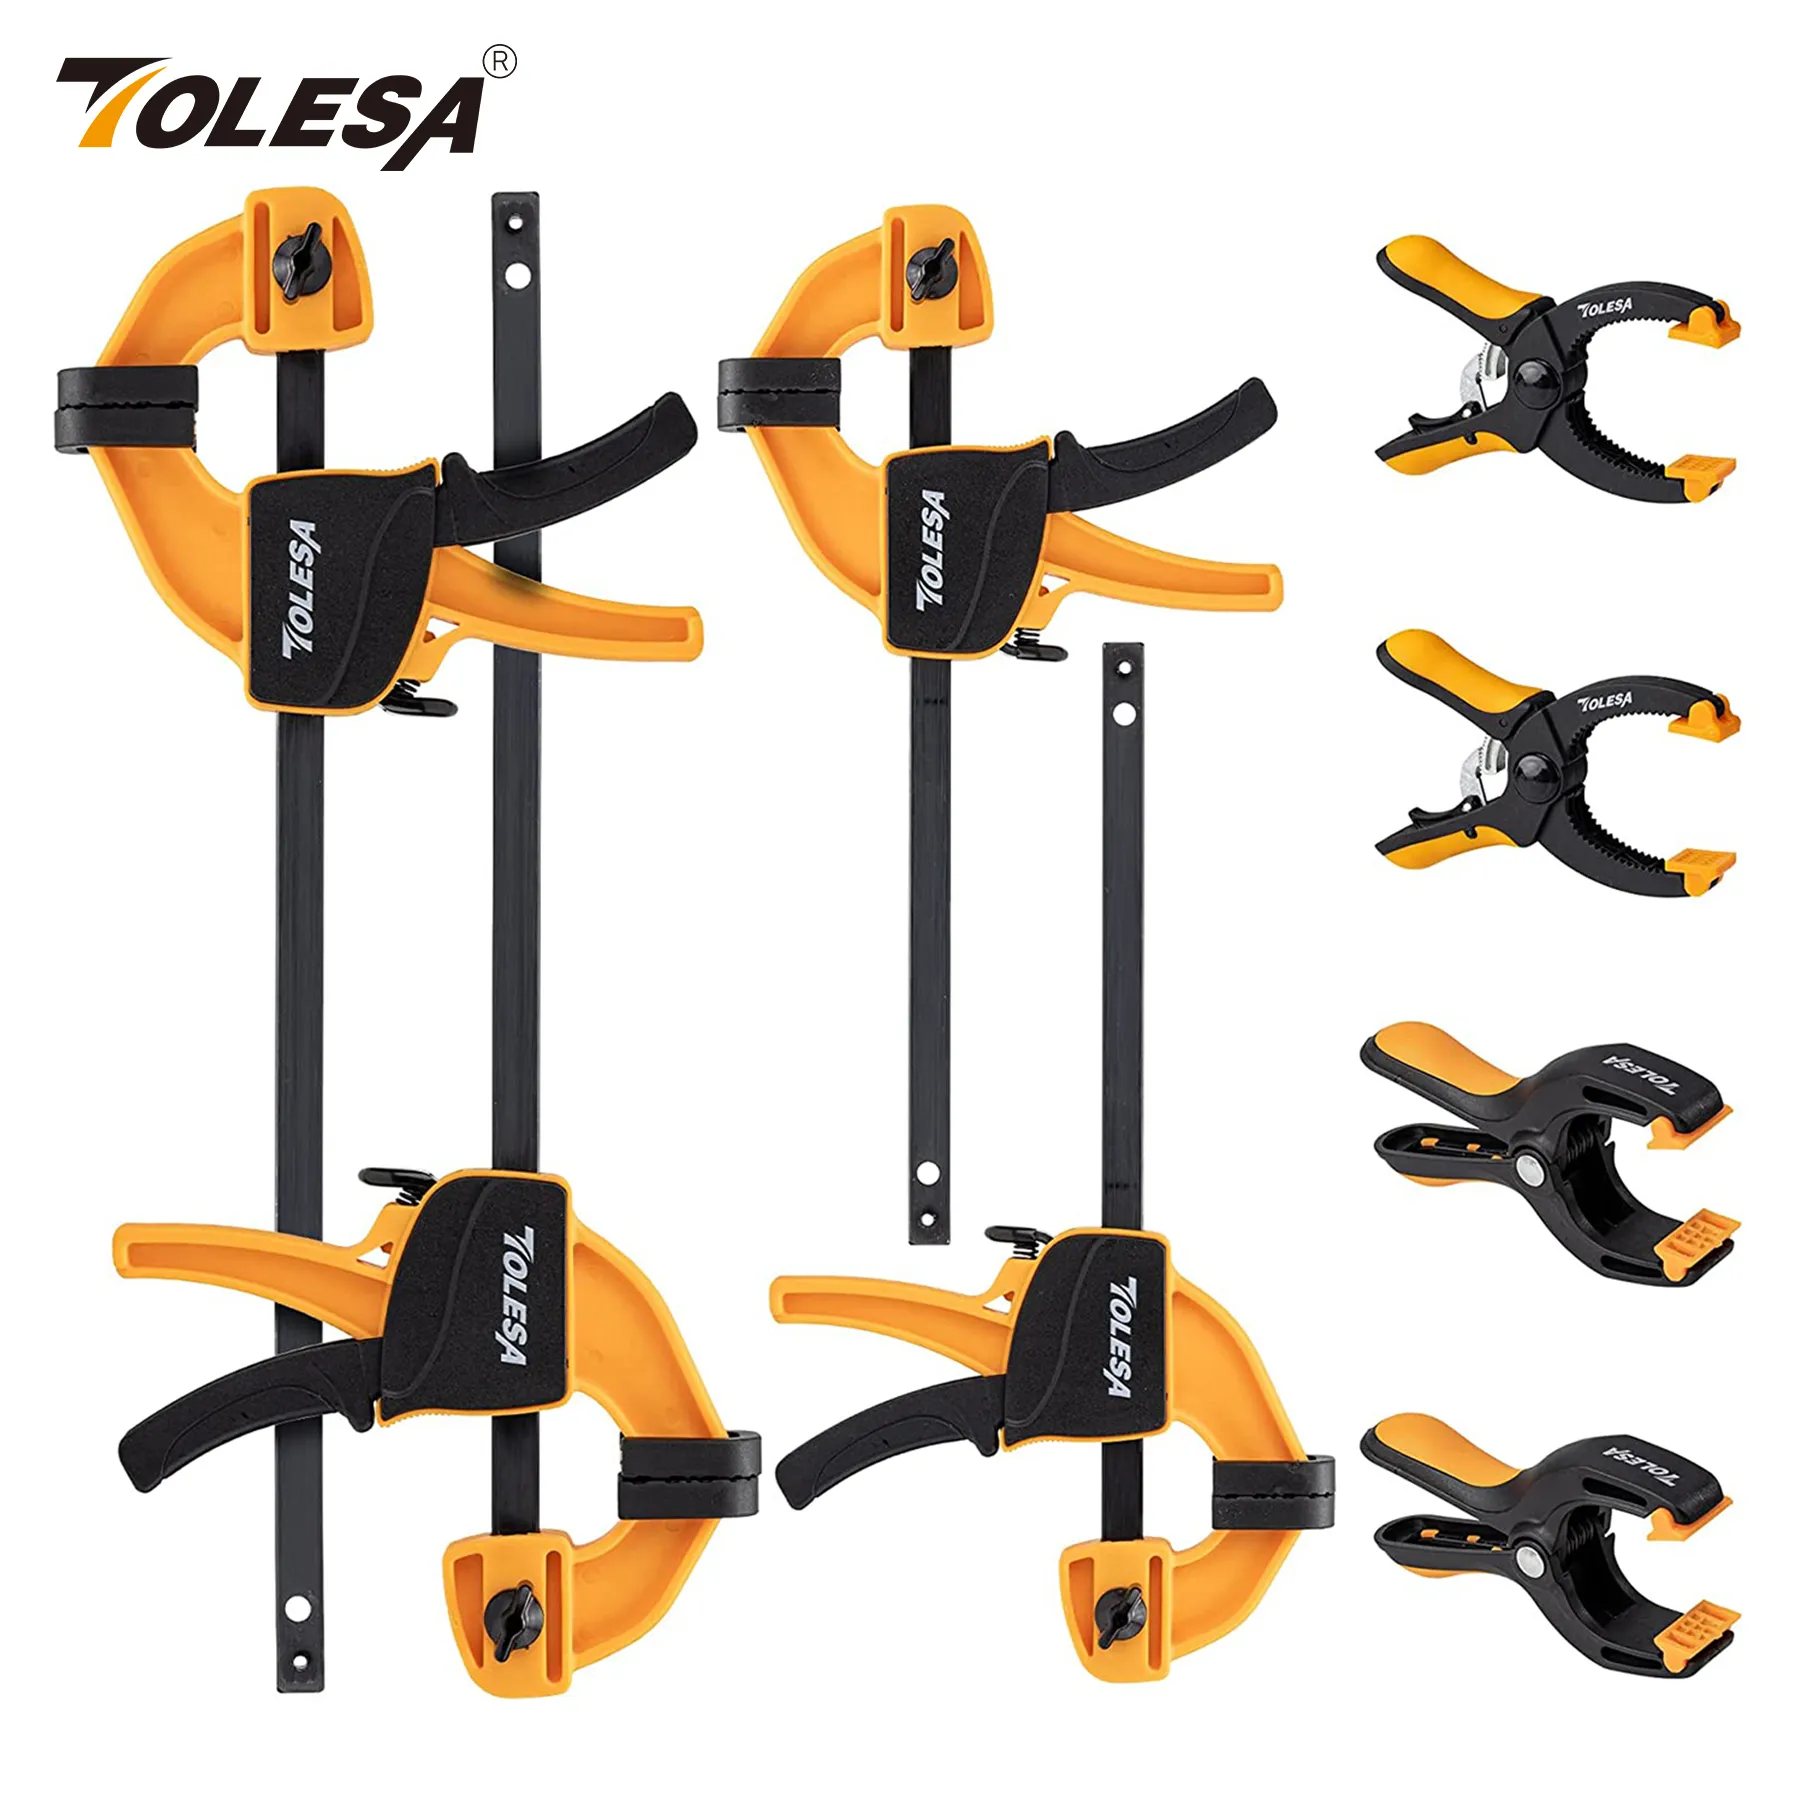 TOLESA Bar Clamps Set para Carpintaria, Light Duty Quick Grip, 45 Lbs Load Limit, 4 